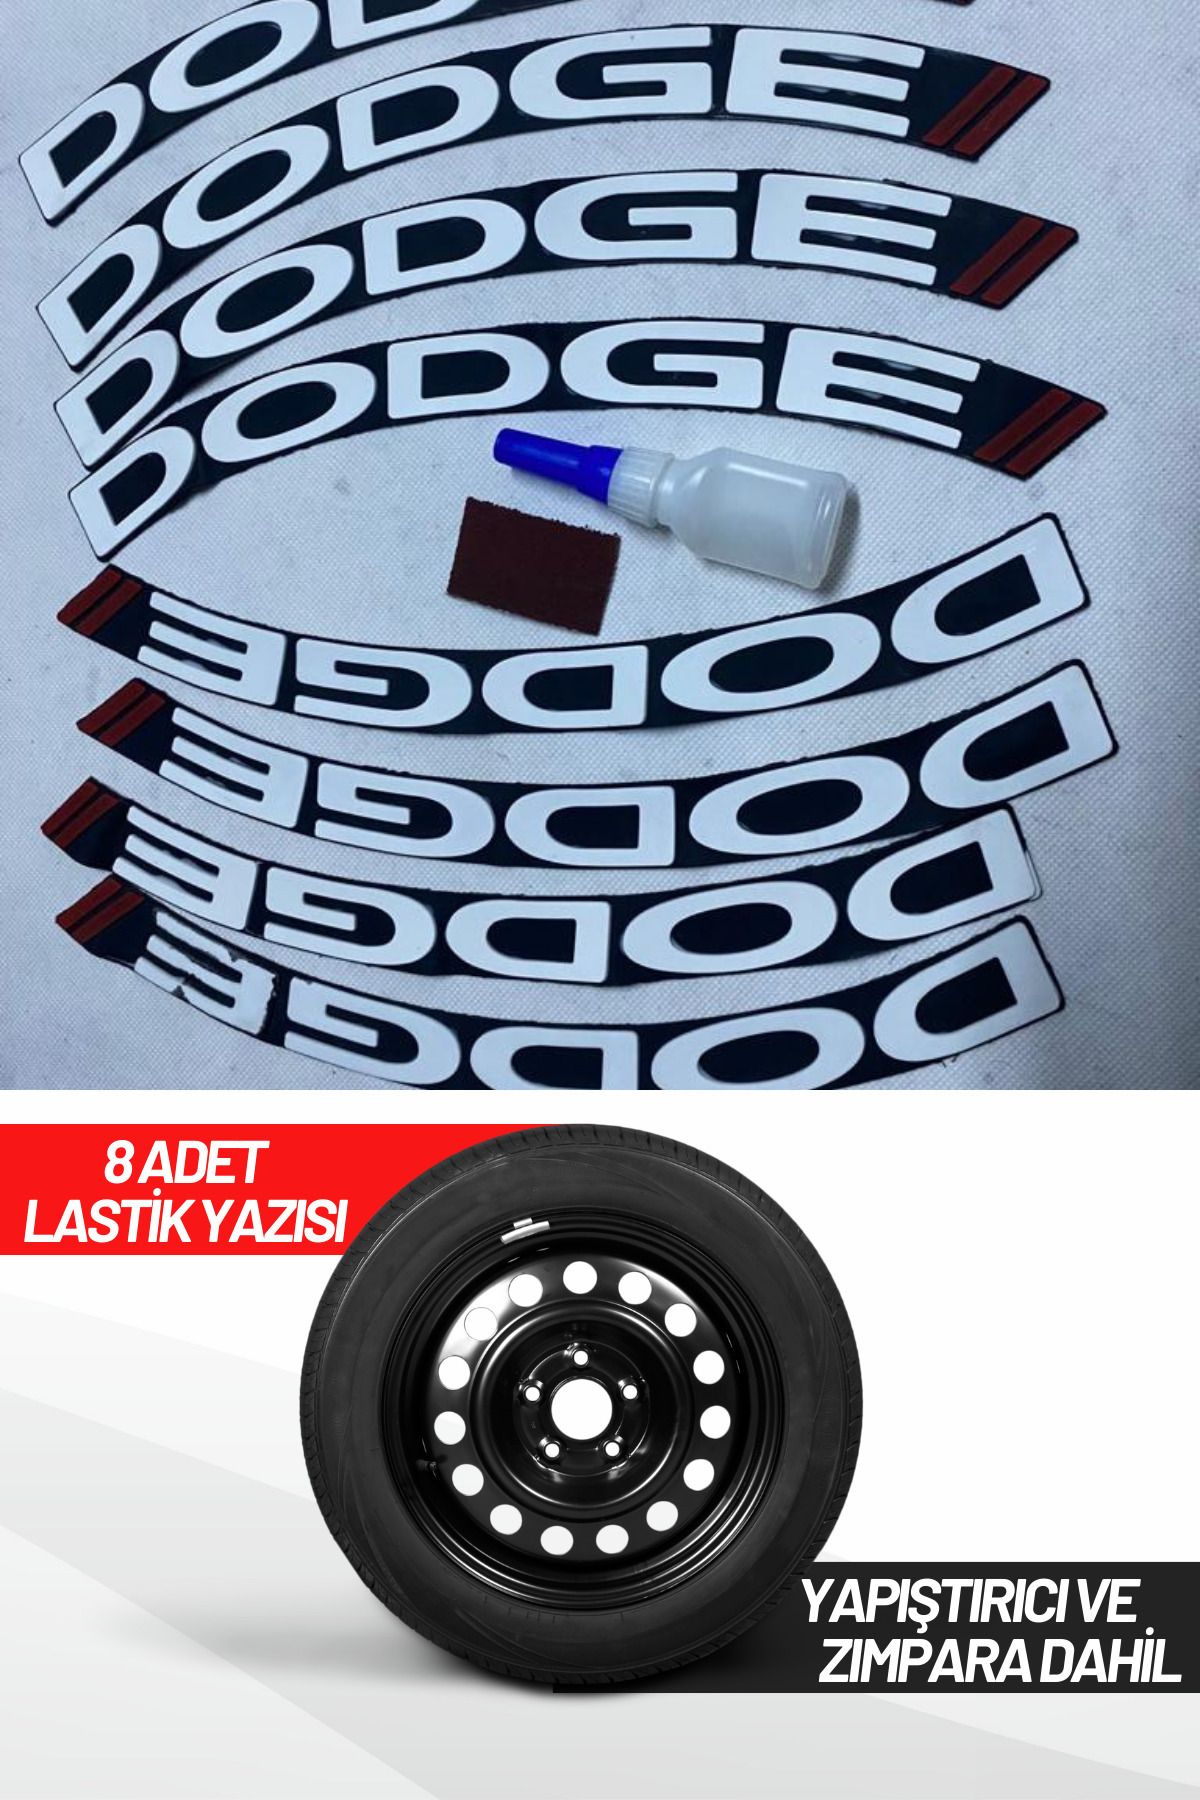 ASTUNİNG Dodge Motosiklet Ve Otomobil Araç 3d Oto Lastik Yazısı Sticker Arma 8 Adet Kırmızı Beyaz